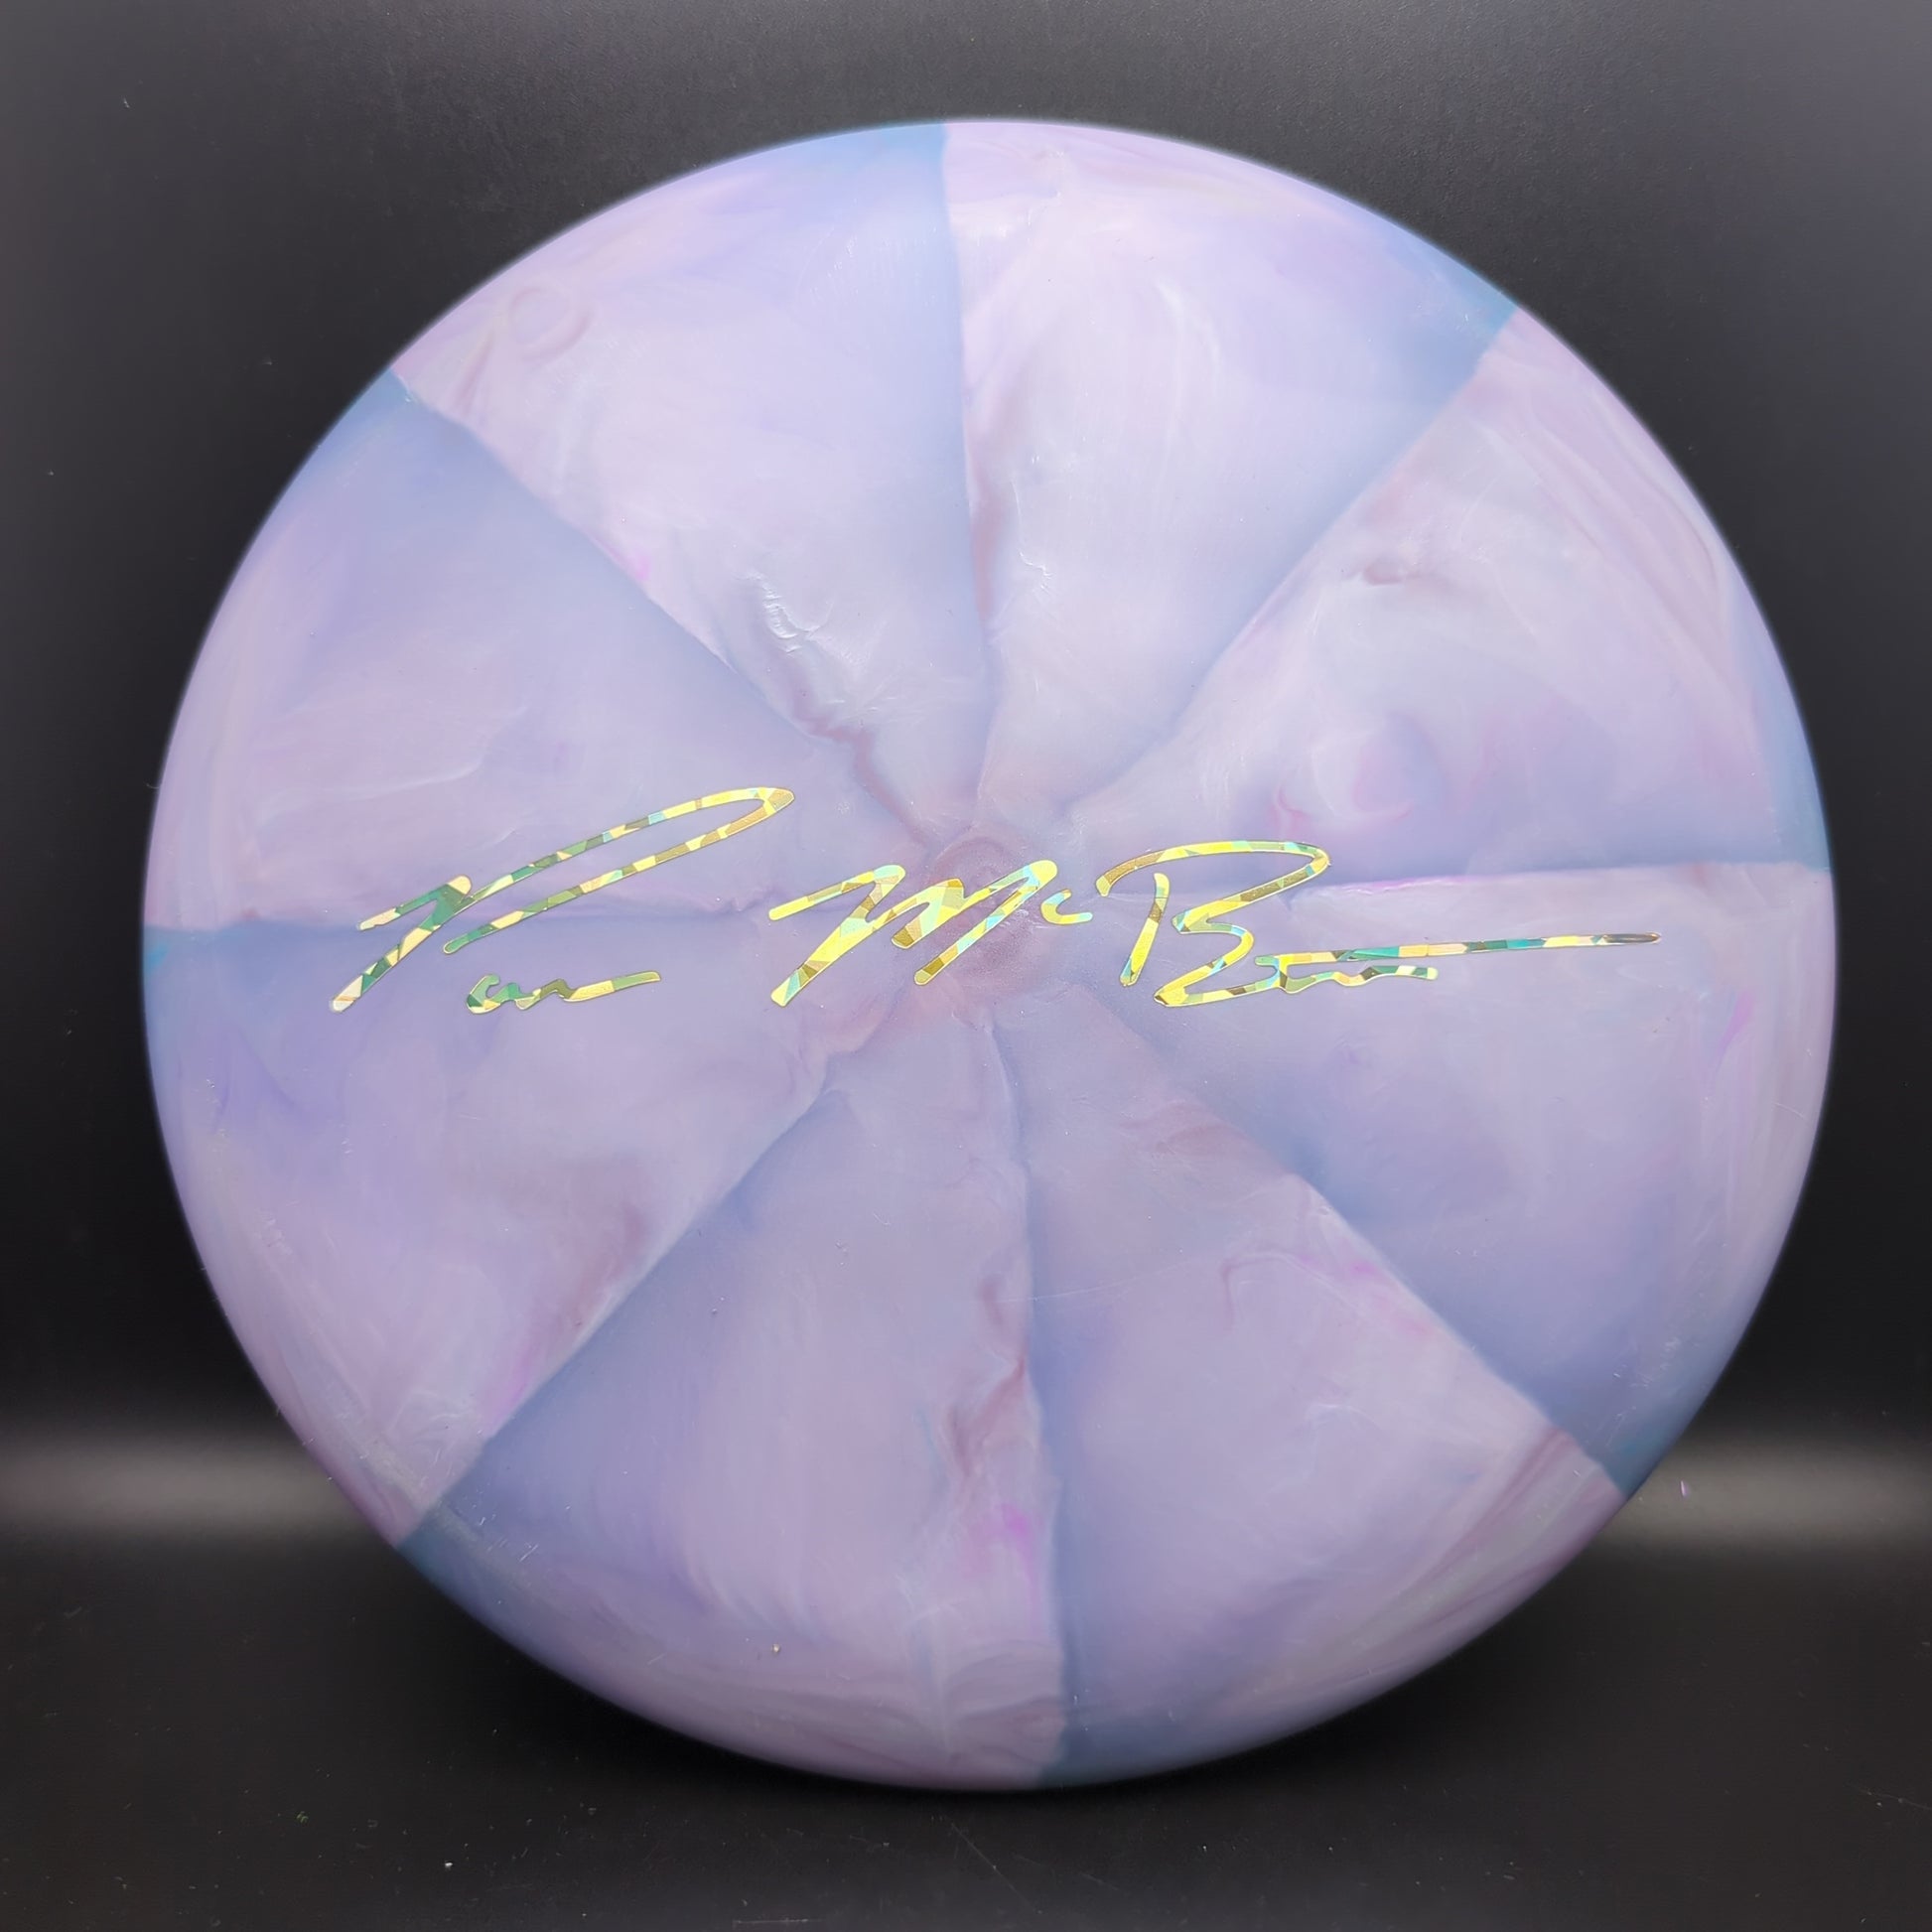 Crazy Tuff Swirl Luna - Paul McBeth Limited Edition CT Discraft